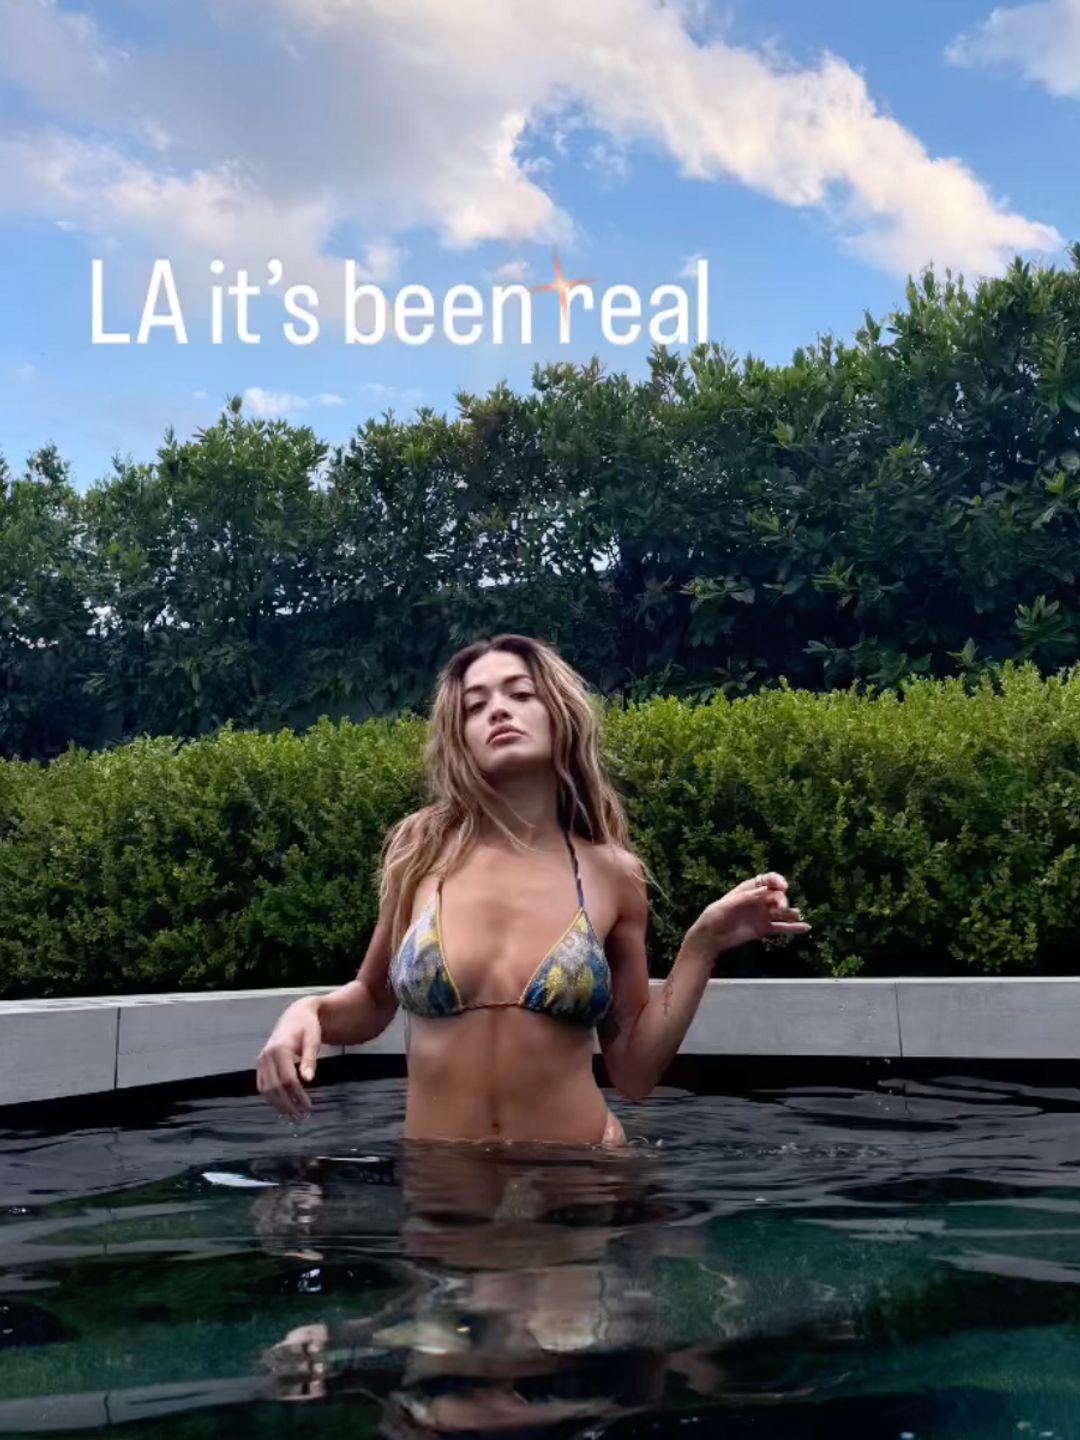 Rita Ora poses in an LA pool in a bikini